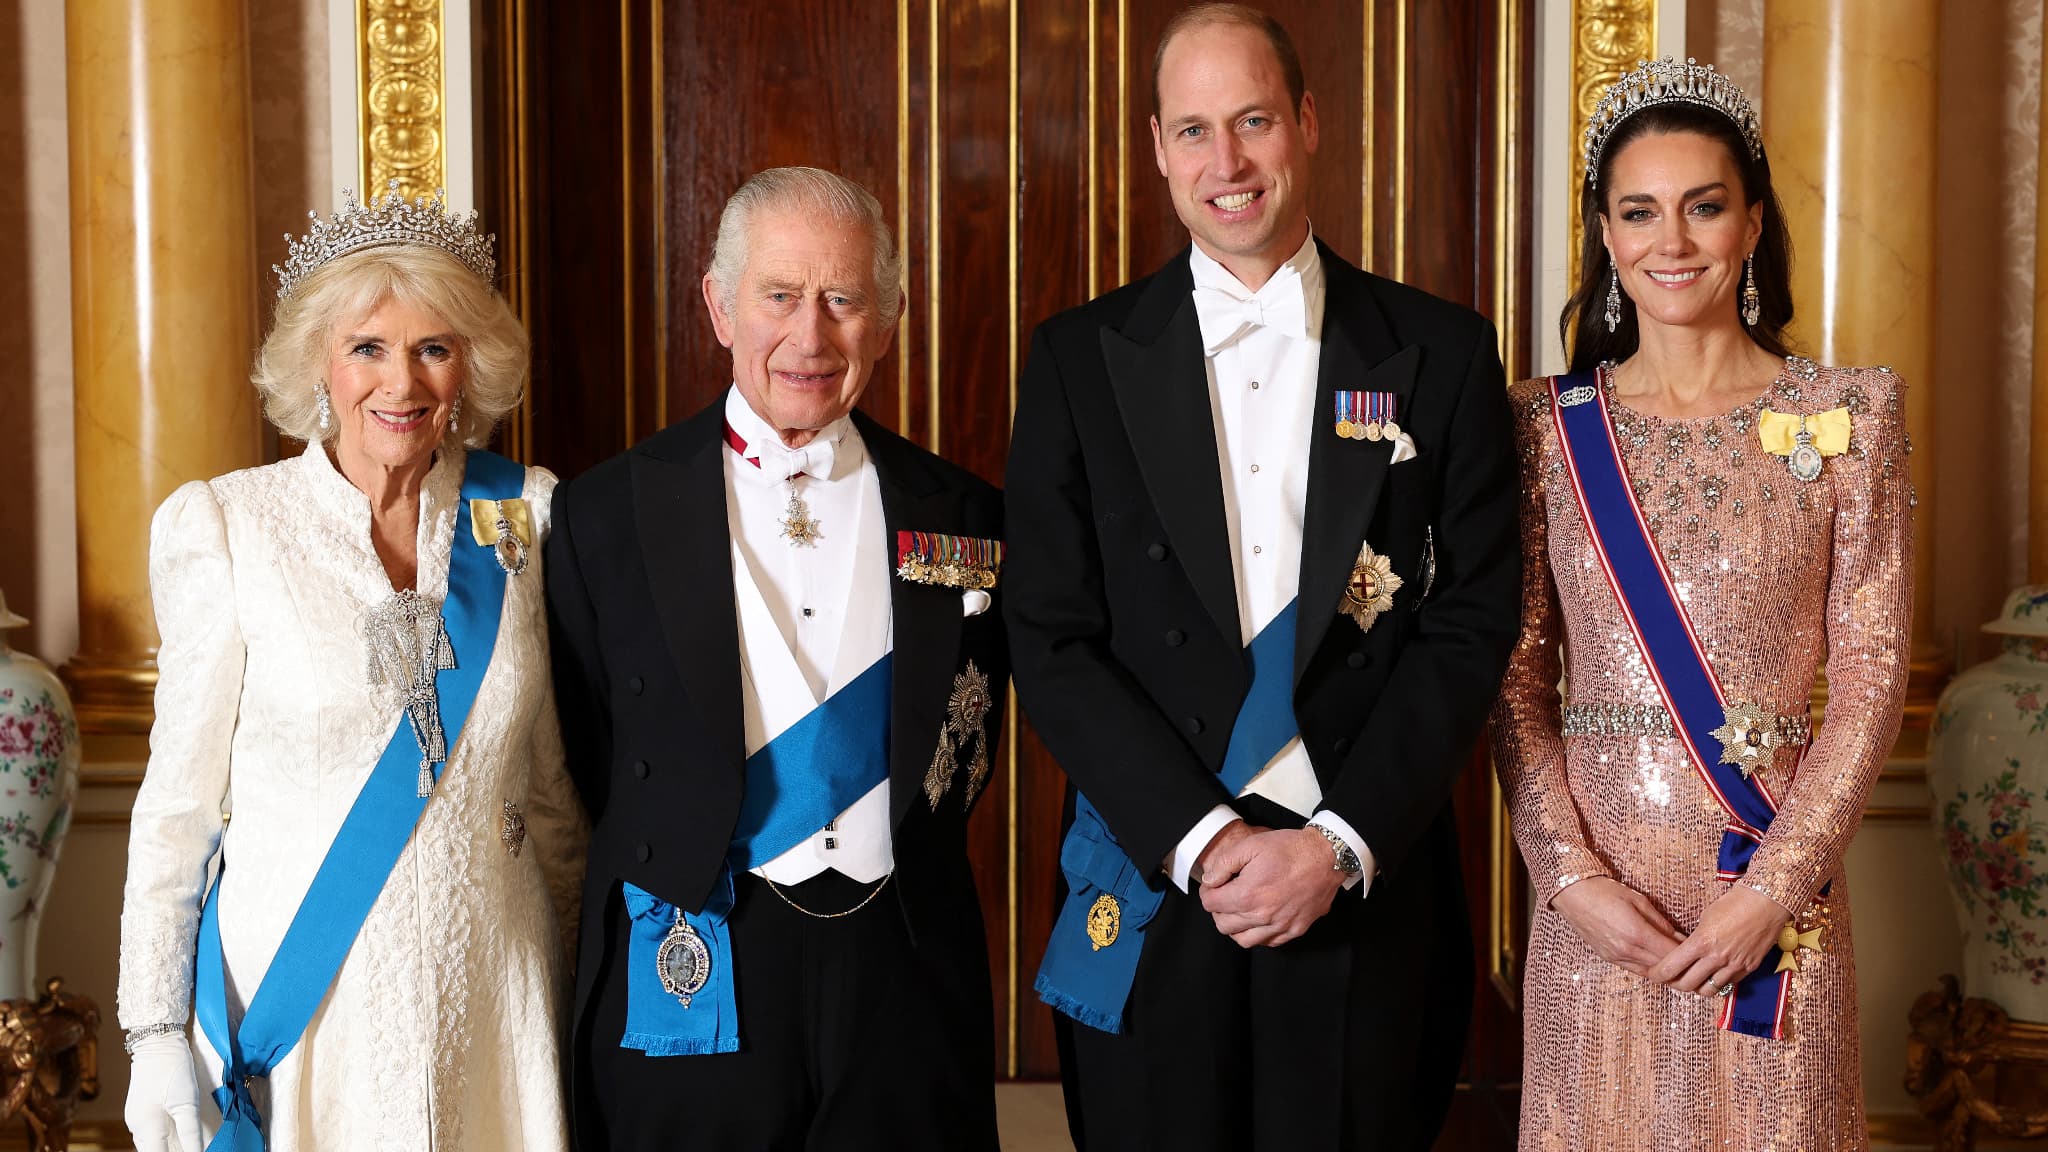 Geconfronteerd met beschuldigingen van racisme verschijnen Charles, Camilla, Kate en William samen op een foto